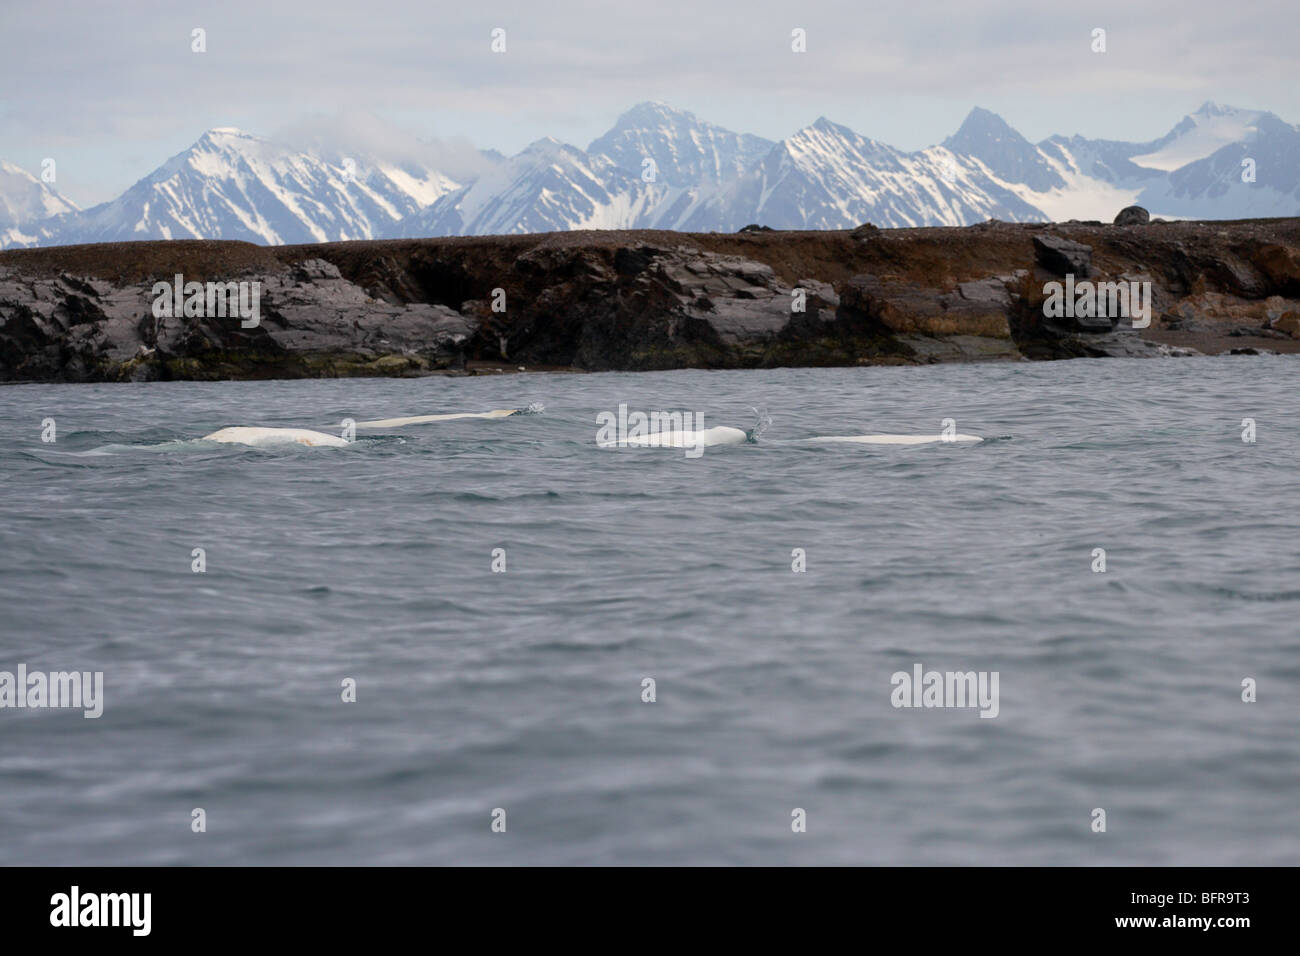 Gregge di beluga affiorante nel mare Artico delle isole Svalbard con Snow capped picchi di montagna in background Foto Stock